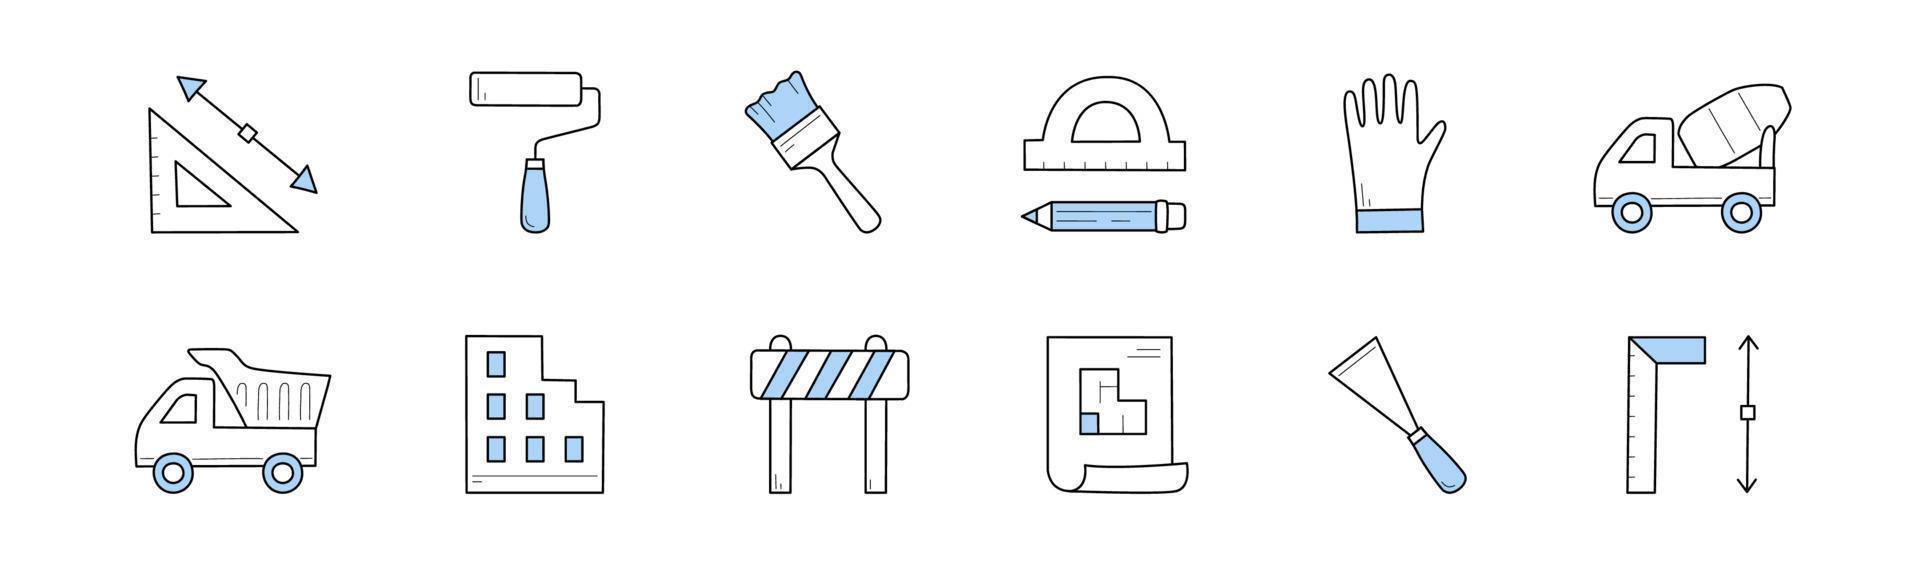 construction, construction d'icônes de doodle, signes vectoriels vecteur